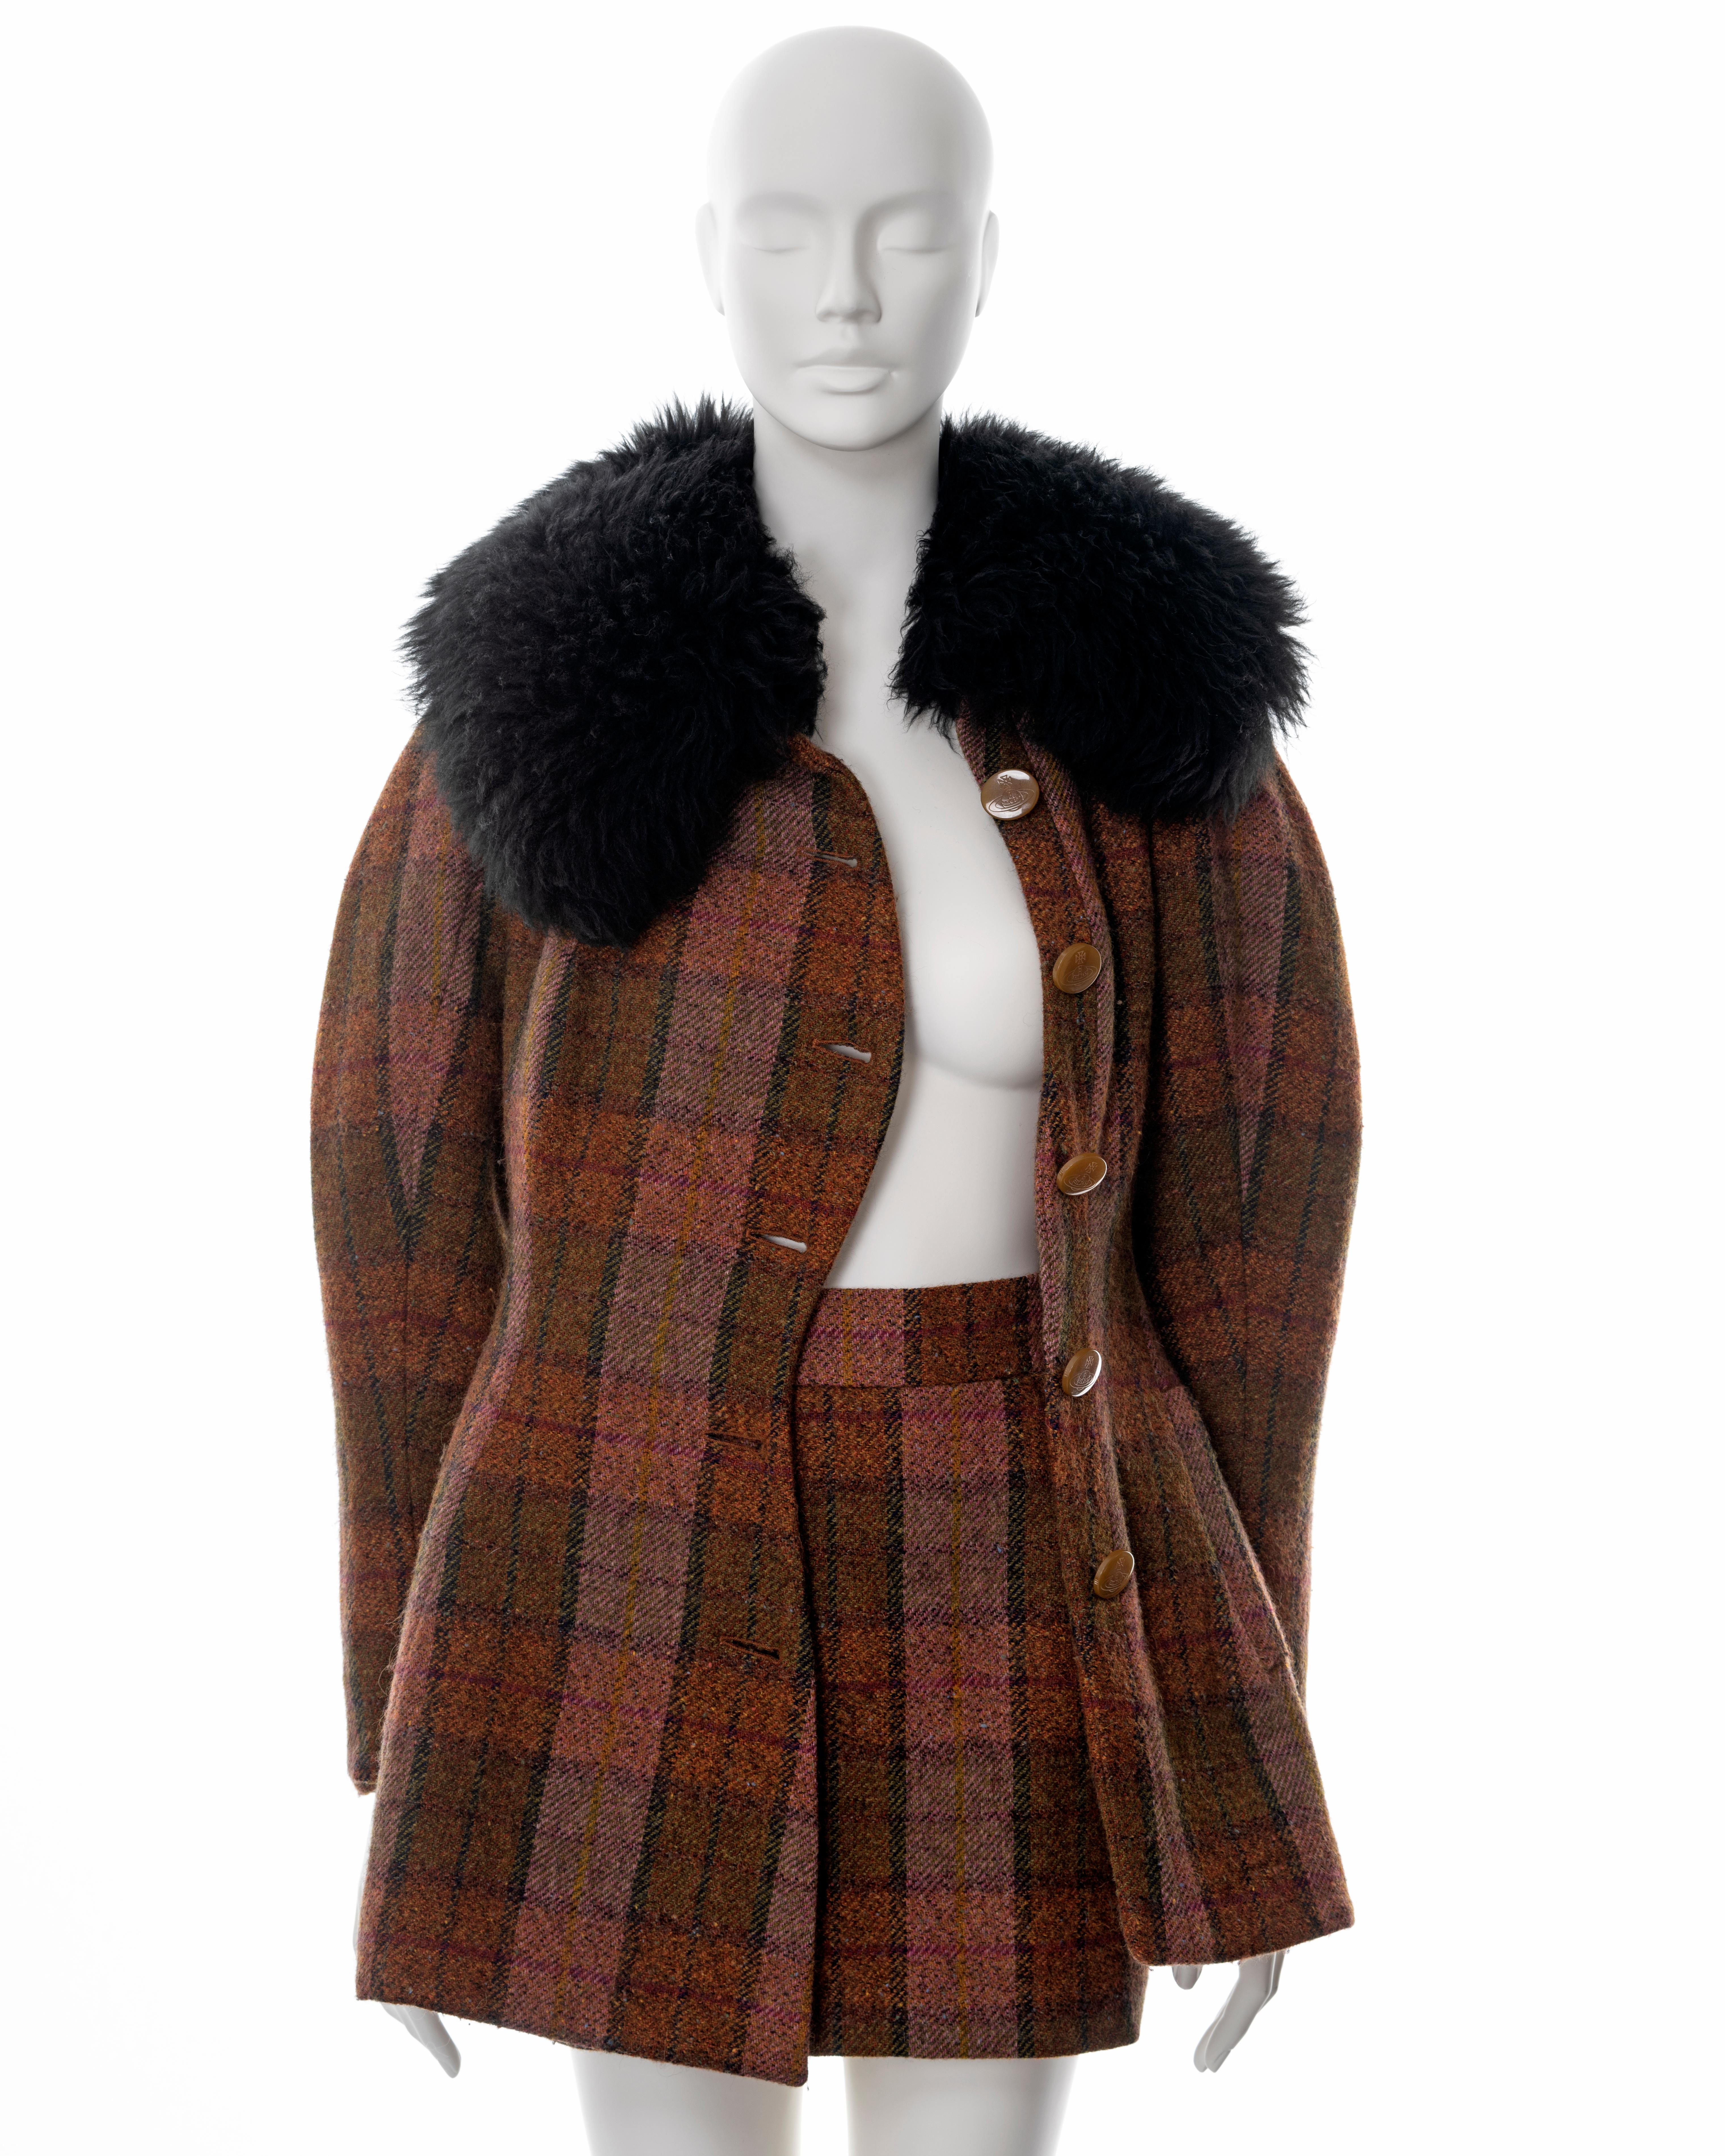 Vivienne Westwood brown tartan tweed skirt suit with sheepskin collar, fw 1995 6